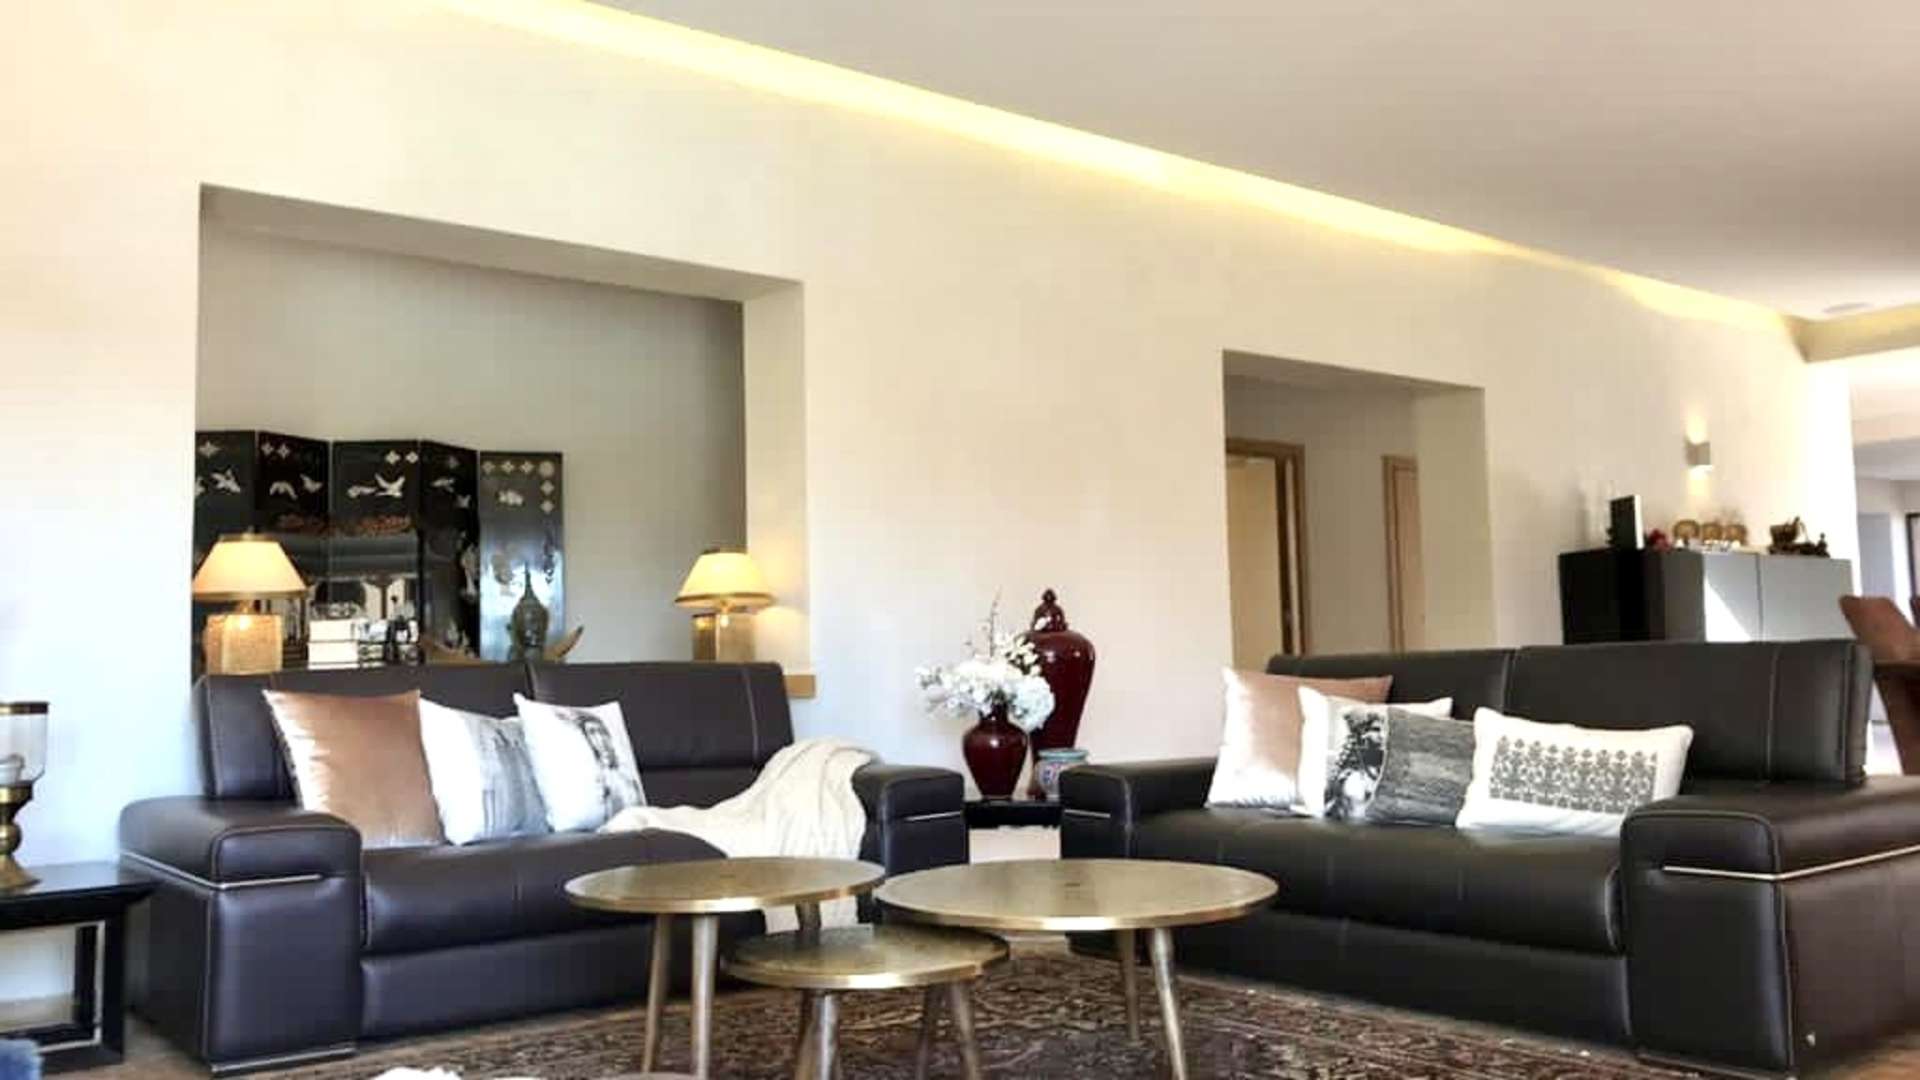 Vente,Villa,Villa de plain-pieds avec 4 suites, piscine privée à 15 min. du centre ville de Marrakech,Marrakech,Route Amizmiz